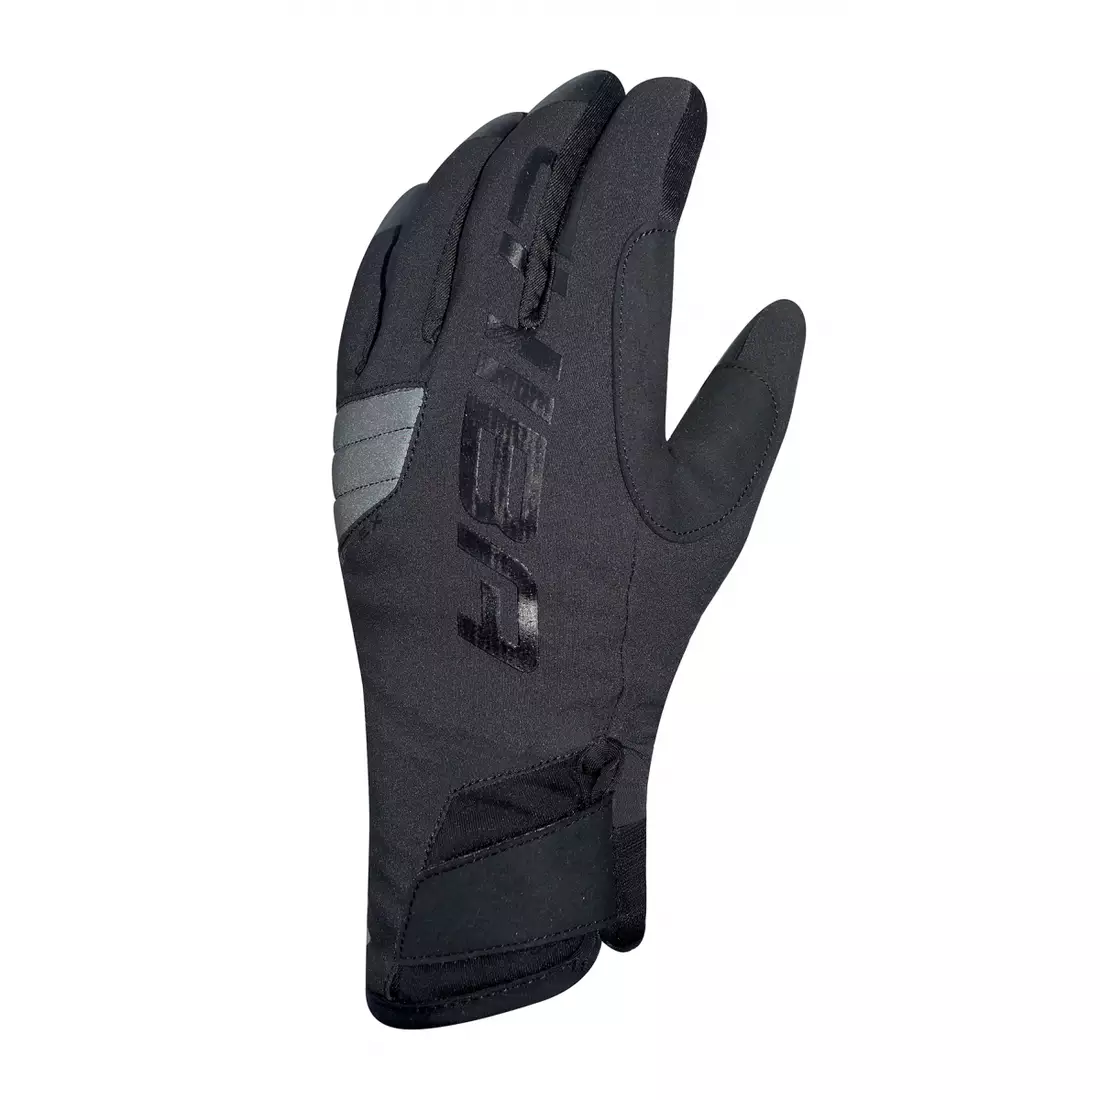 CHIBA BIOXCELL WARM WINTER teplé zimní cyklistické rukavice Primaloft, Černá 3160020 